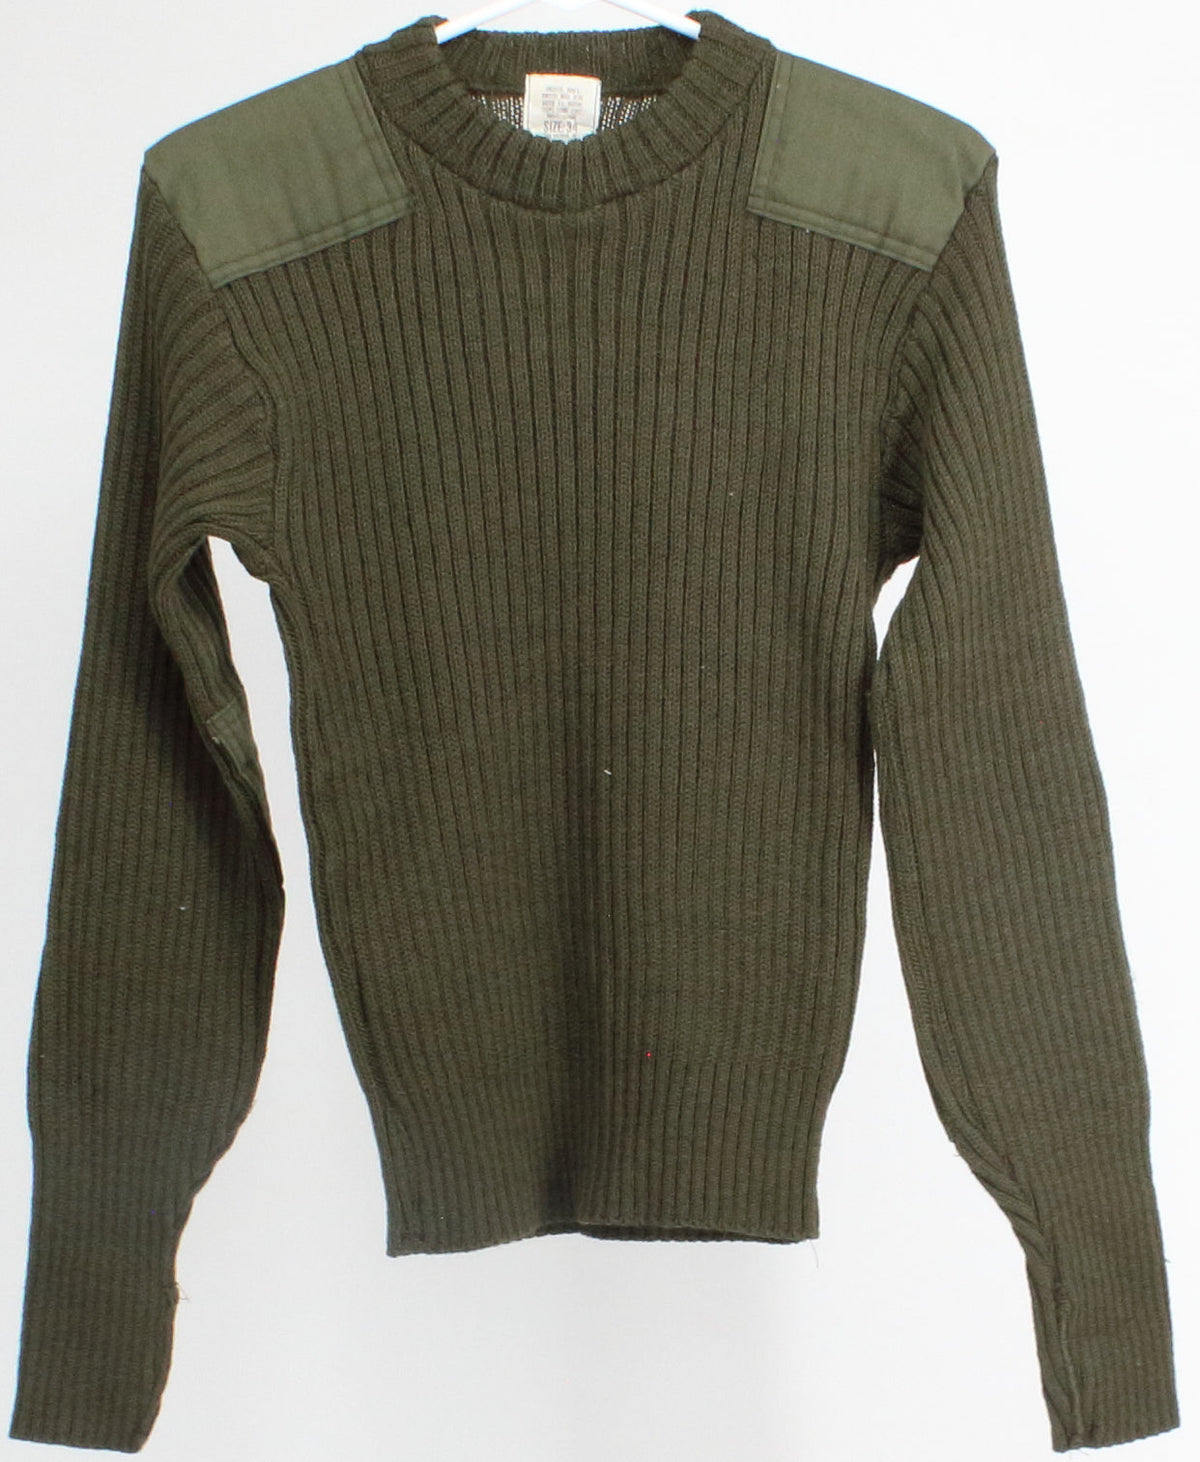 Sebo Knitwear Dark Army Green Men's Sweater